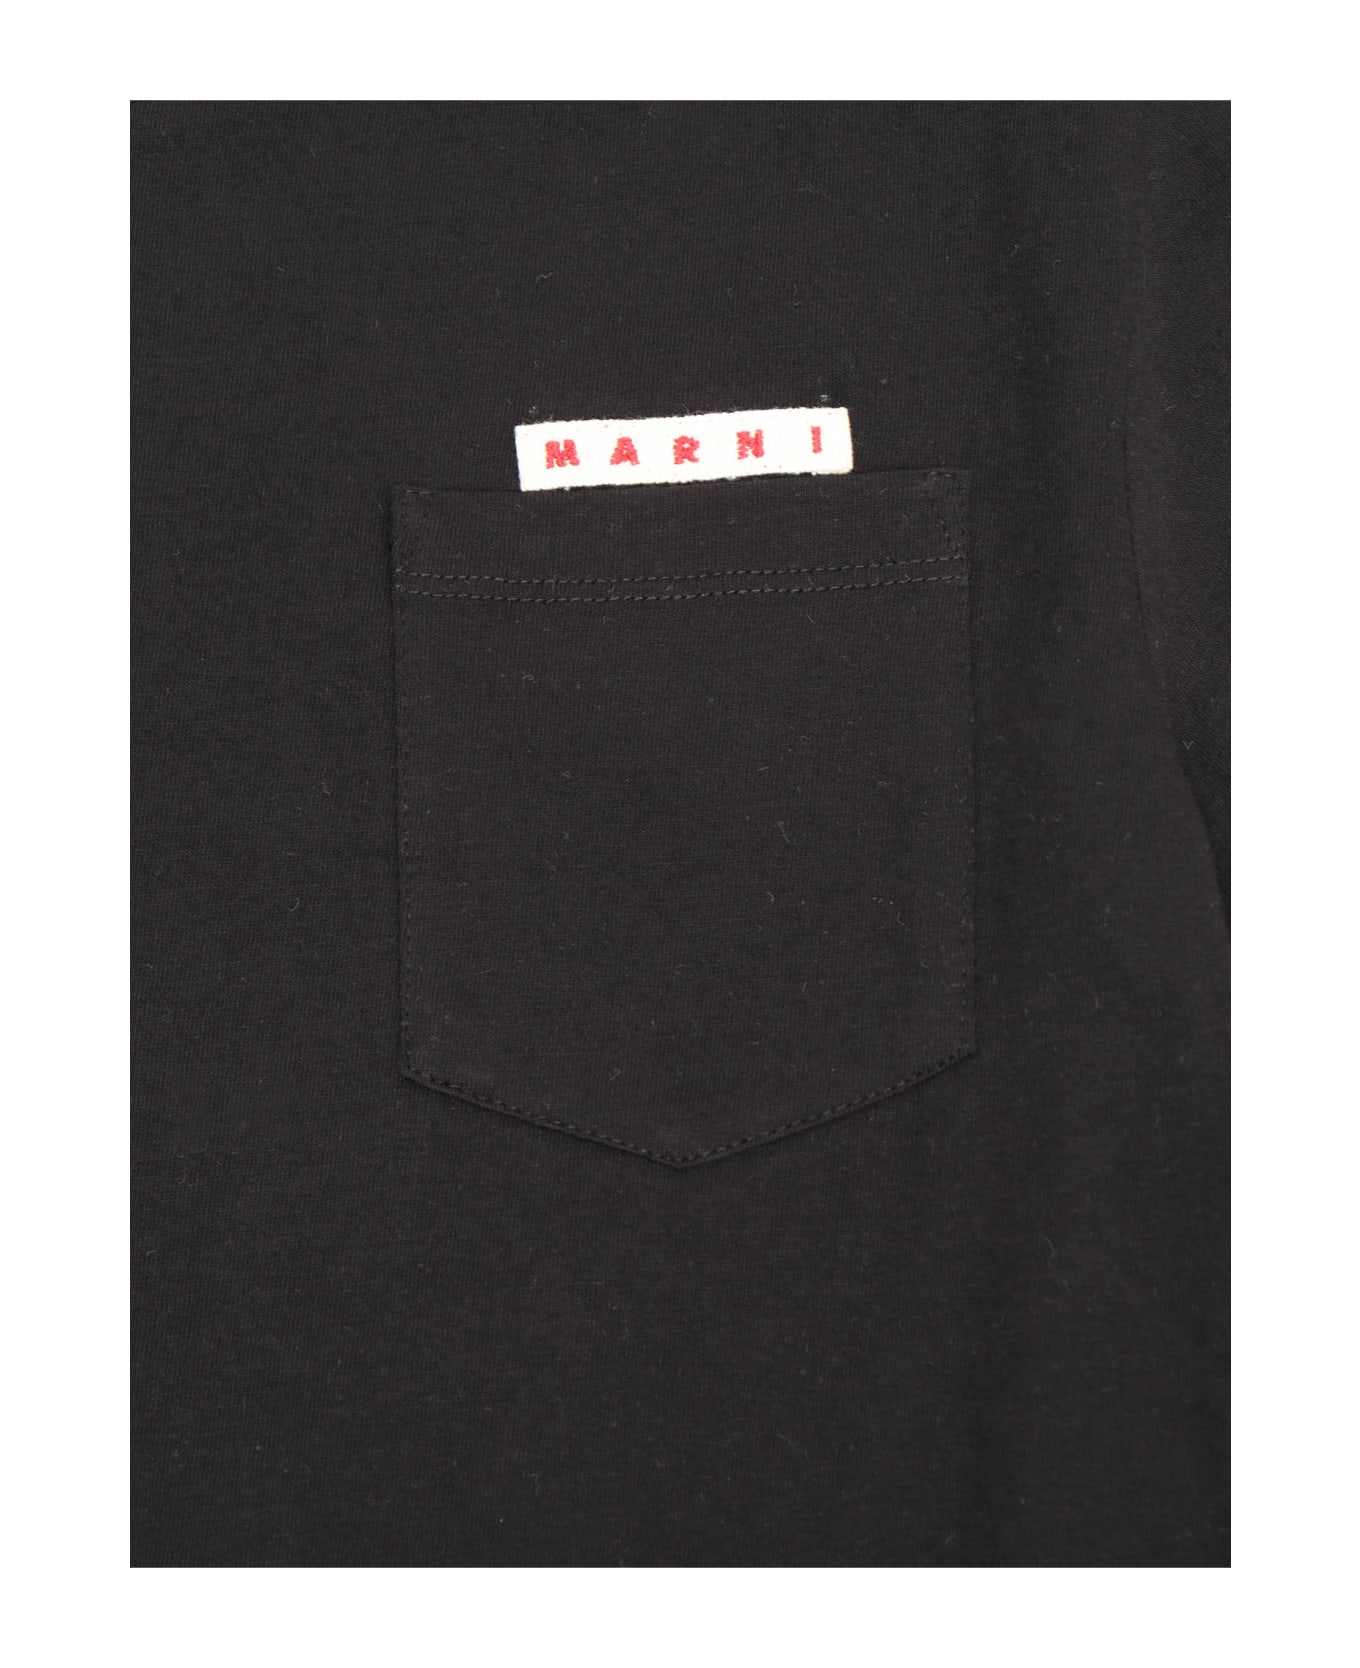 Marni Black Cotton T-shirt - BLACK